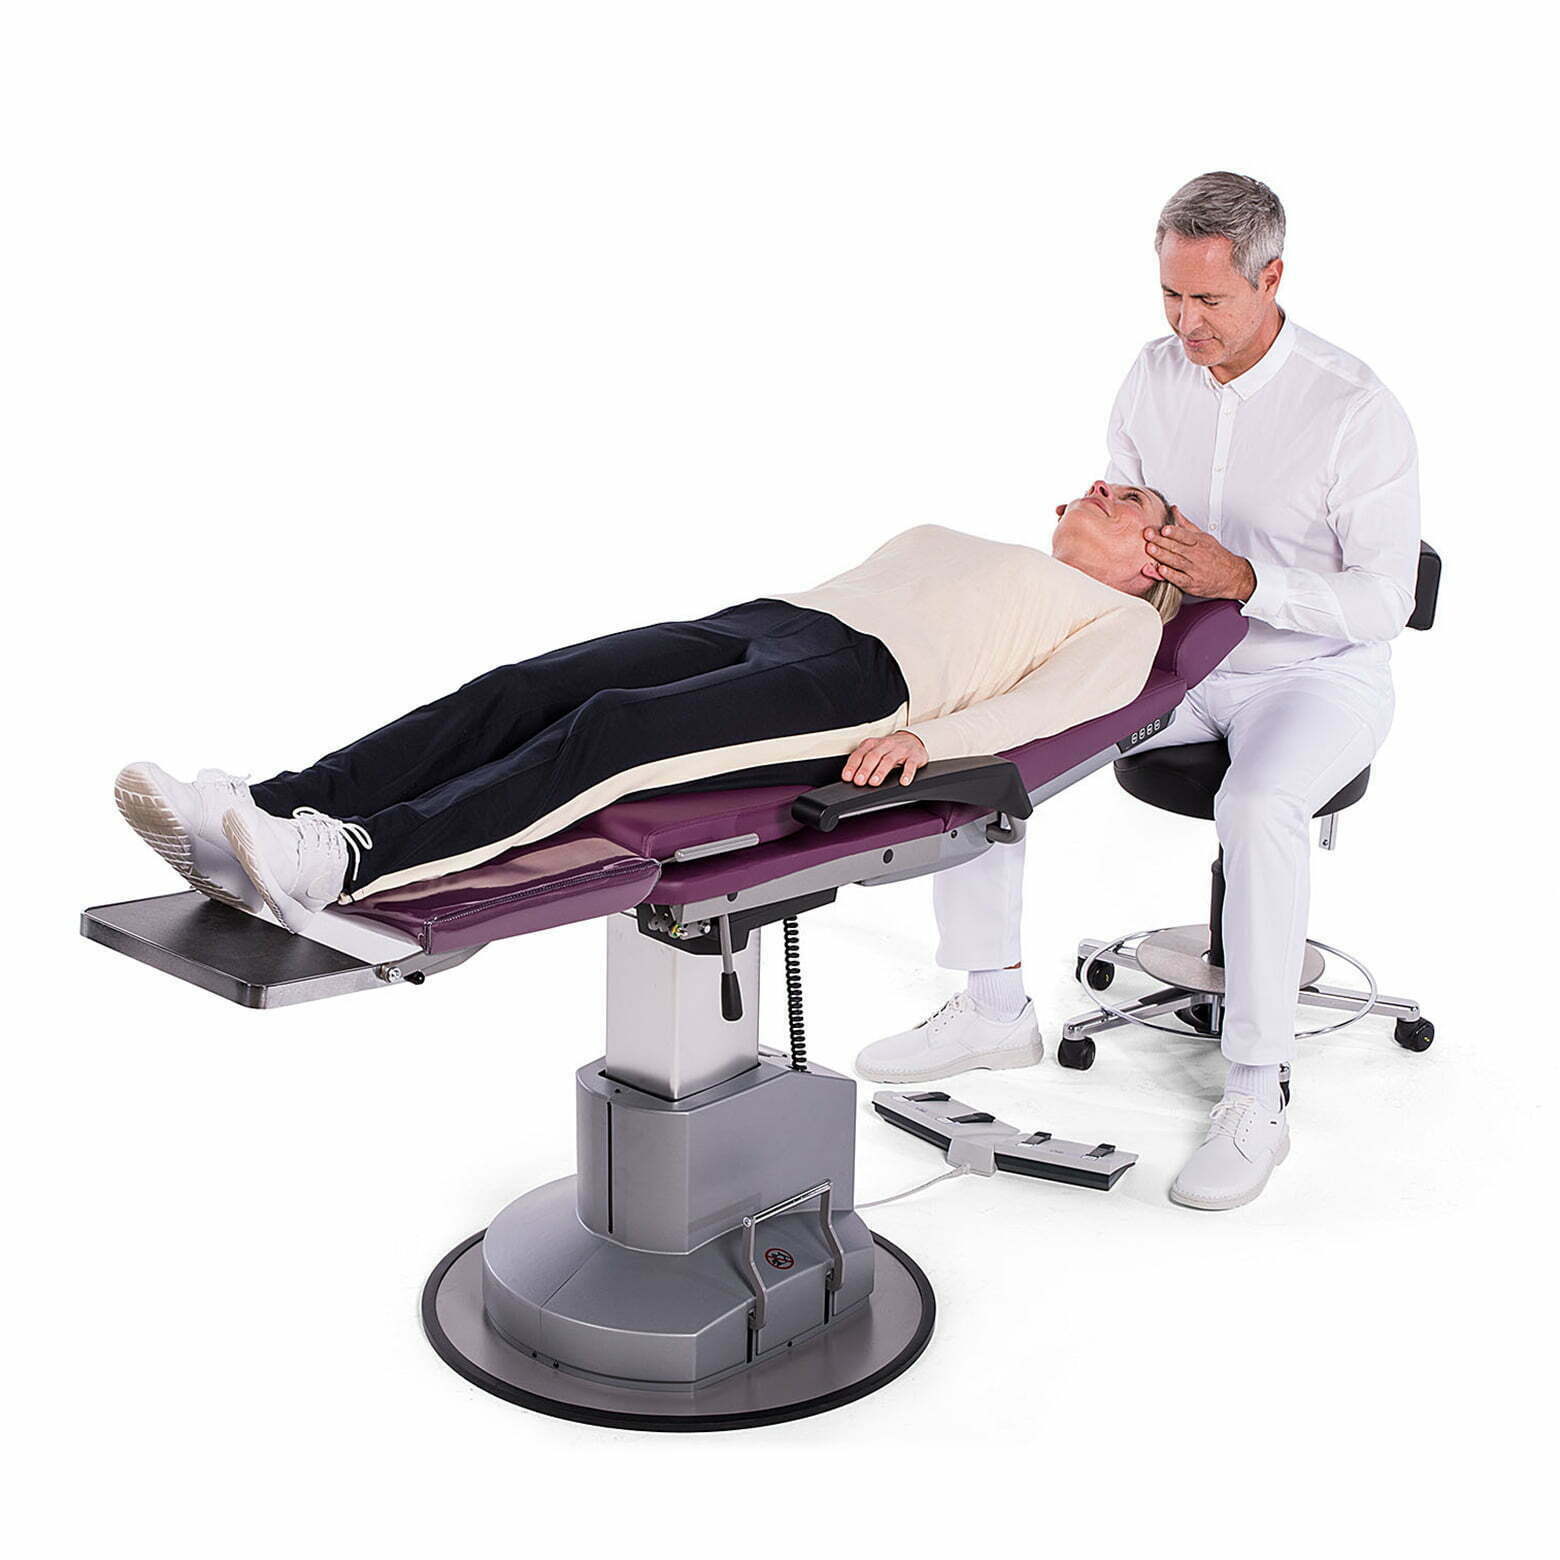 Medseat elektrisk justerbar behandlingsstol og undersøgelsesstol fra Greiner hos Alcyon